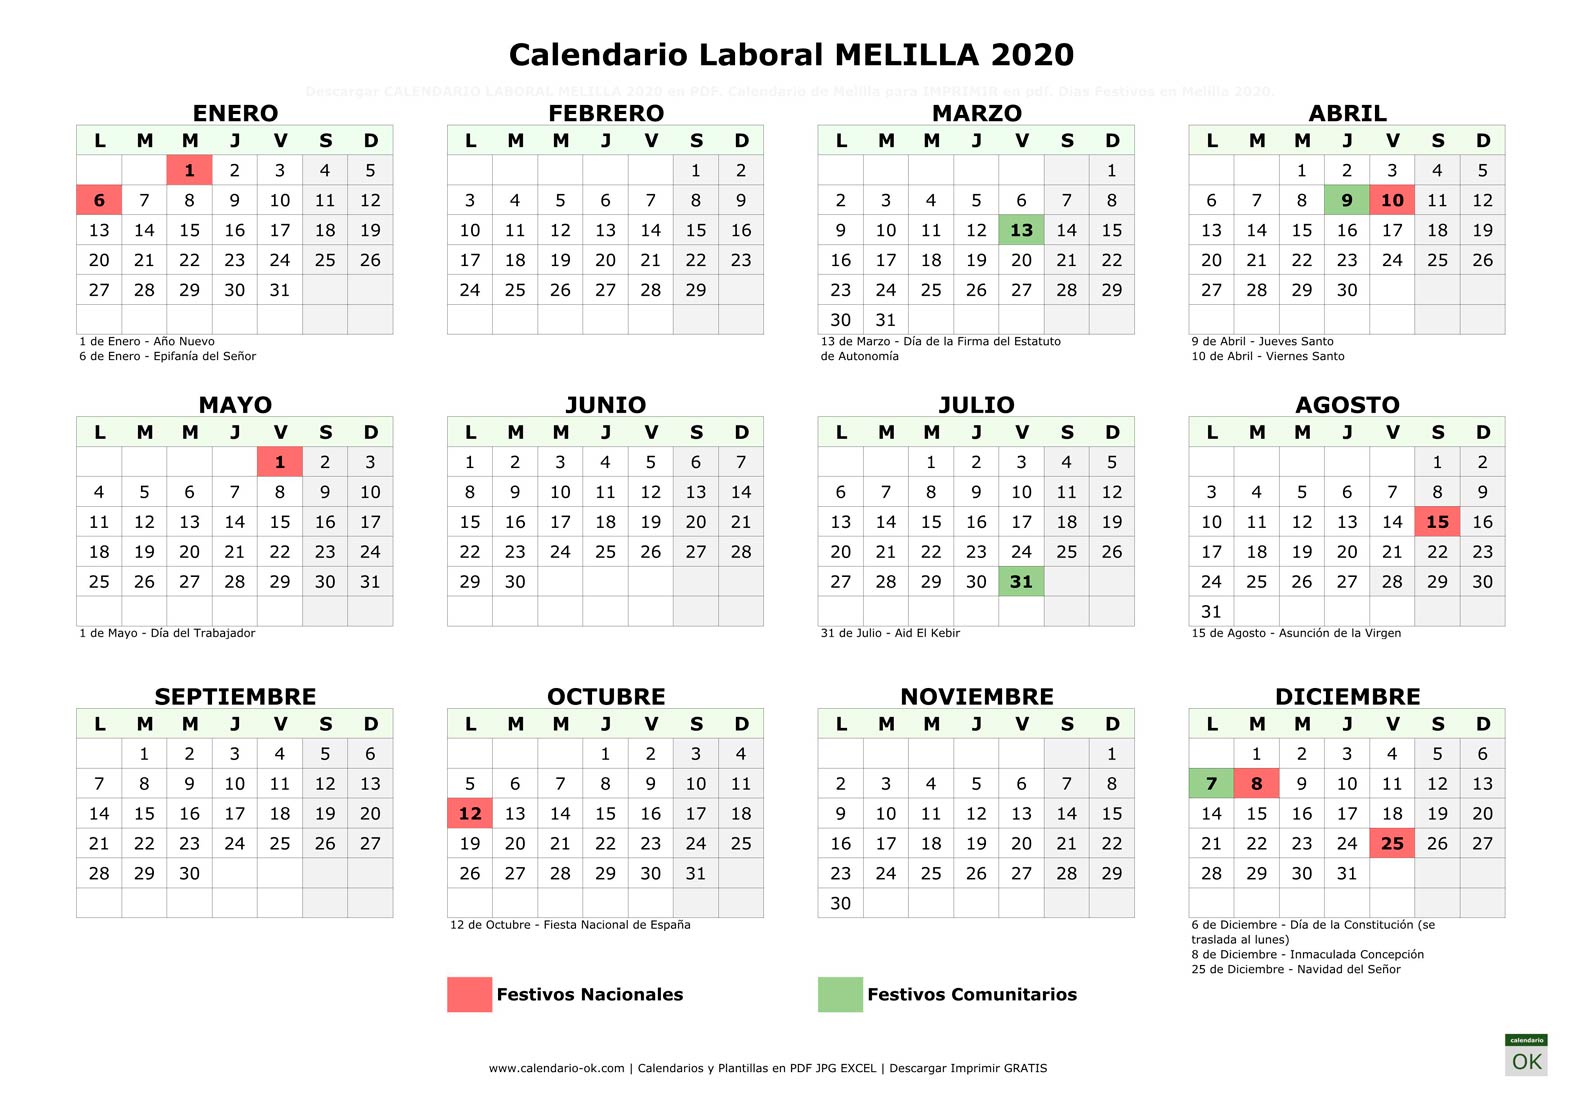 Calendario Laboral MELILLA 2020 horizontal